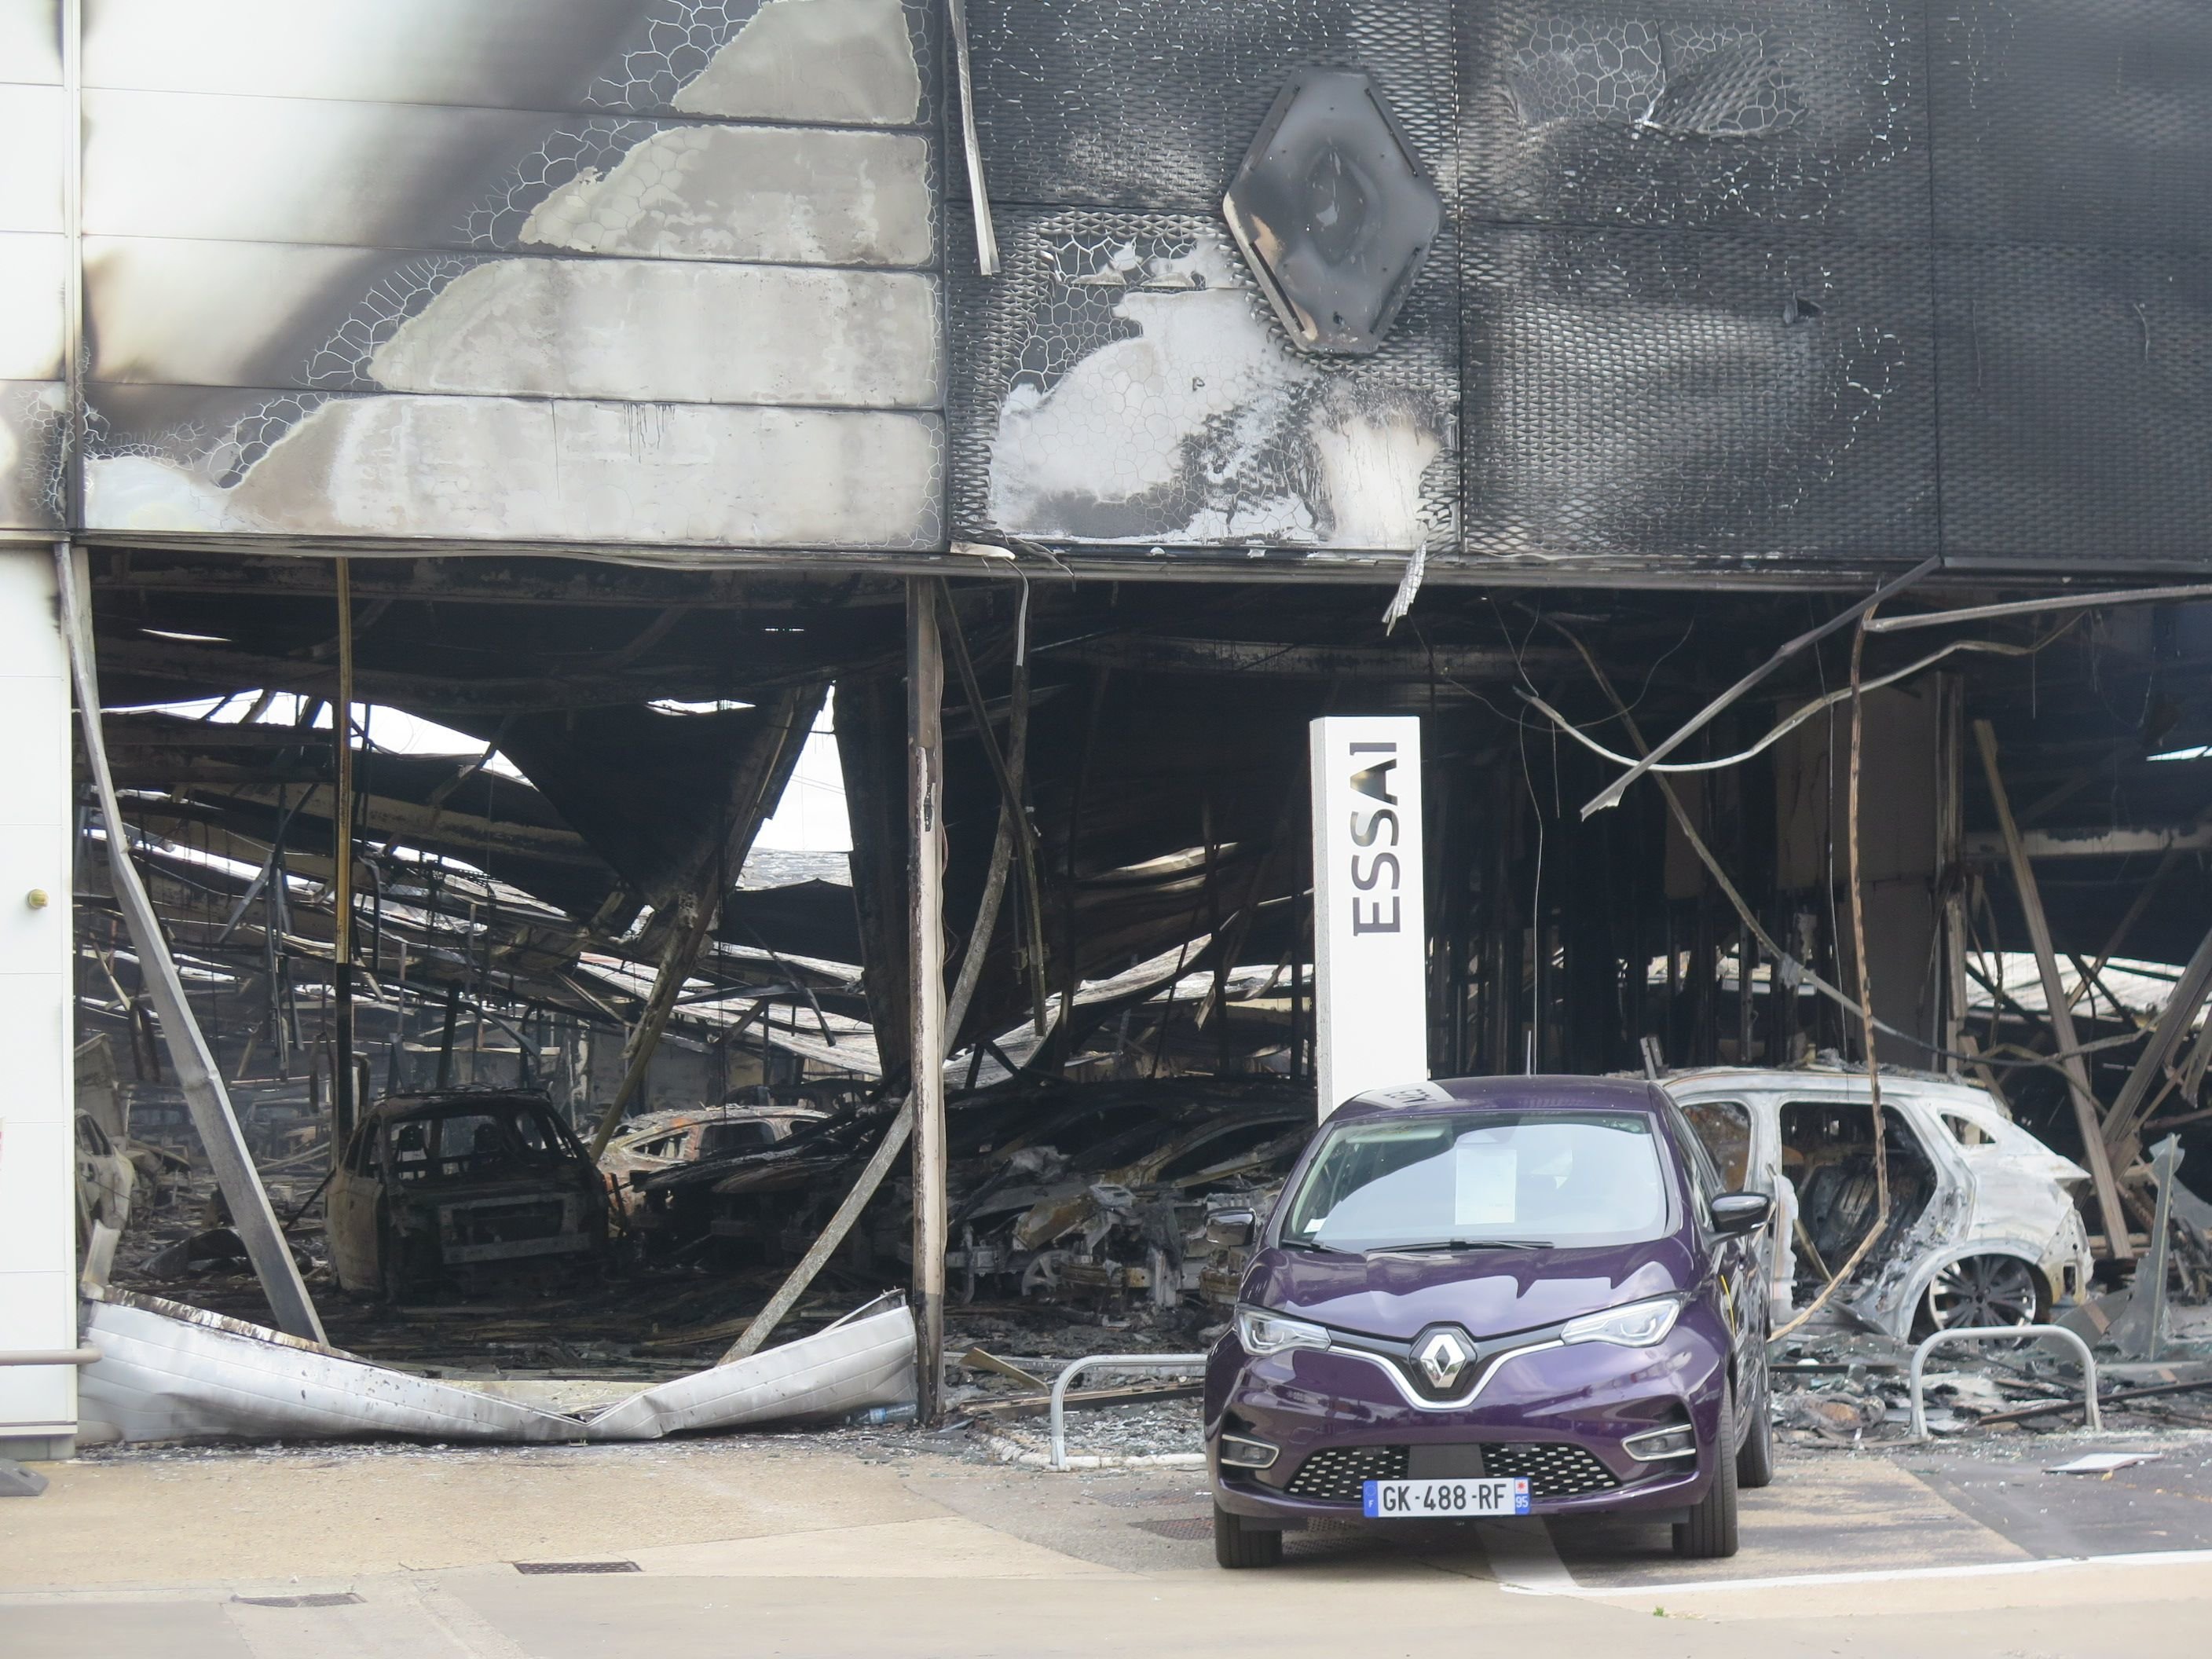 Le garage Renault Rousseau automobile d'Osny, situé chaussée Jules César, en limite de Cergy et Pontoise a entièrement brûlé. Il a été incendié dans la nuit de jeudi à vendredi pendant les émeutes qui se sont déclarées un peu partout dans l'agglomération. LP/Marie Persidat